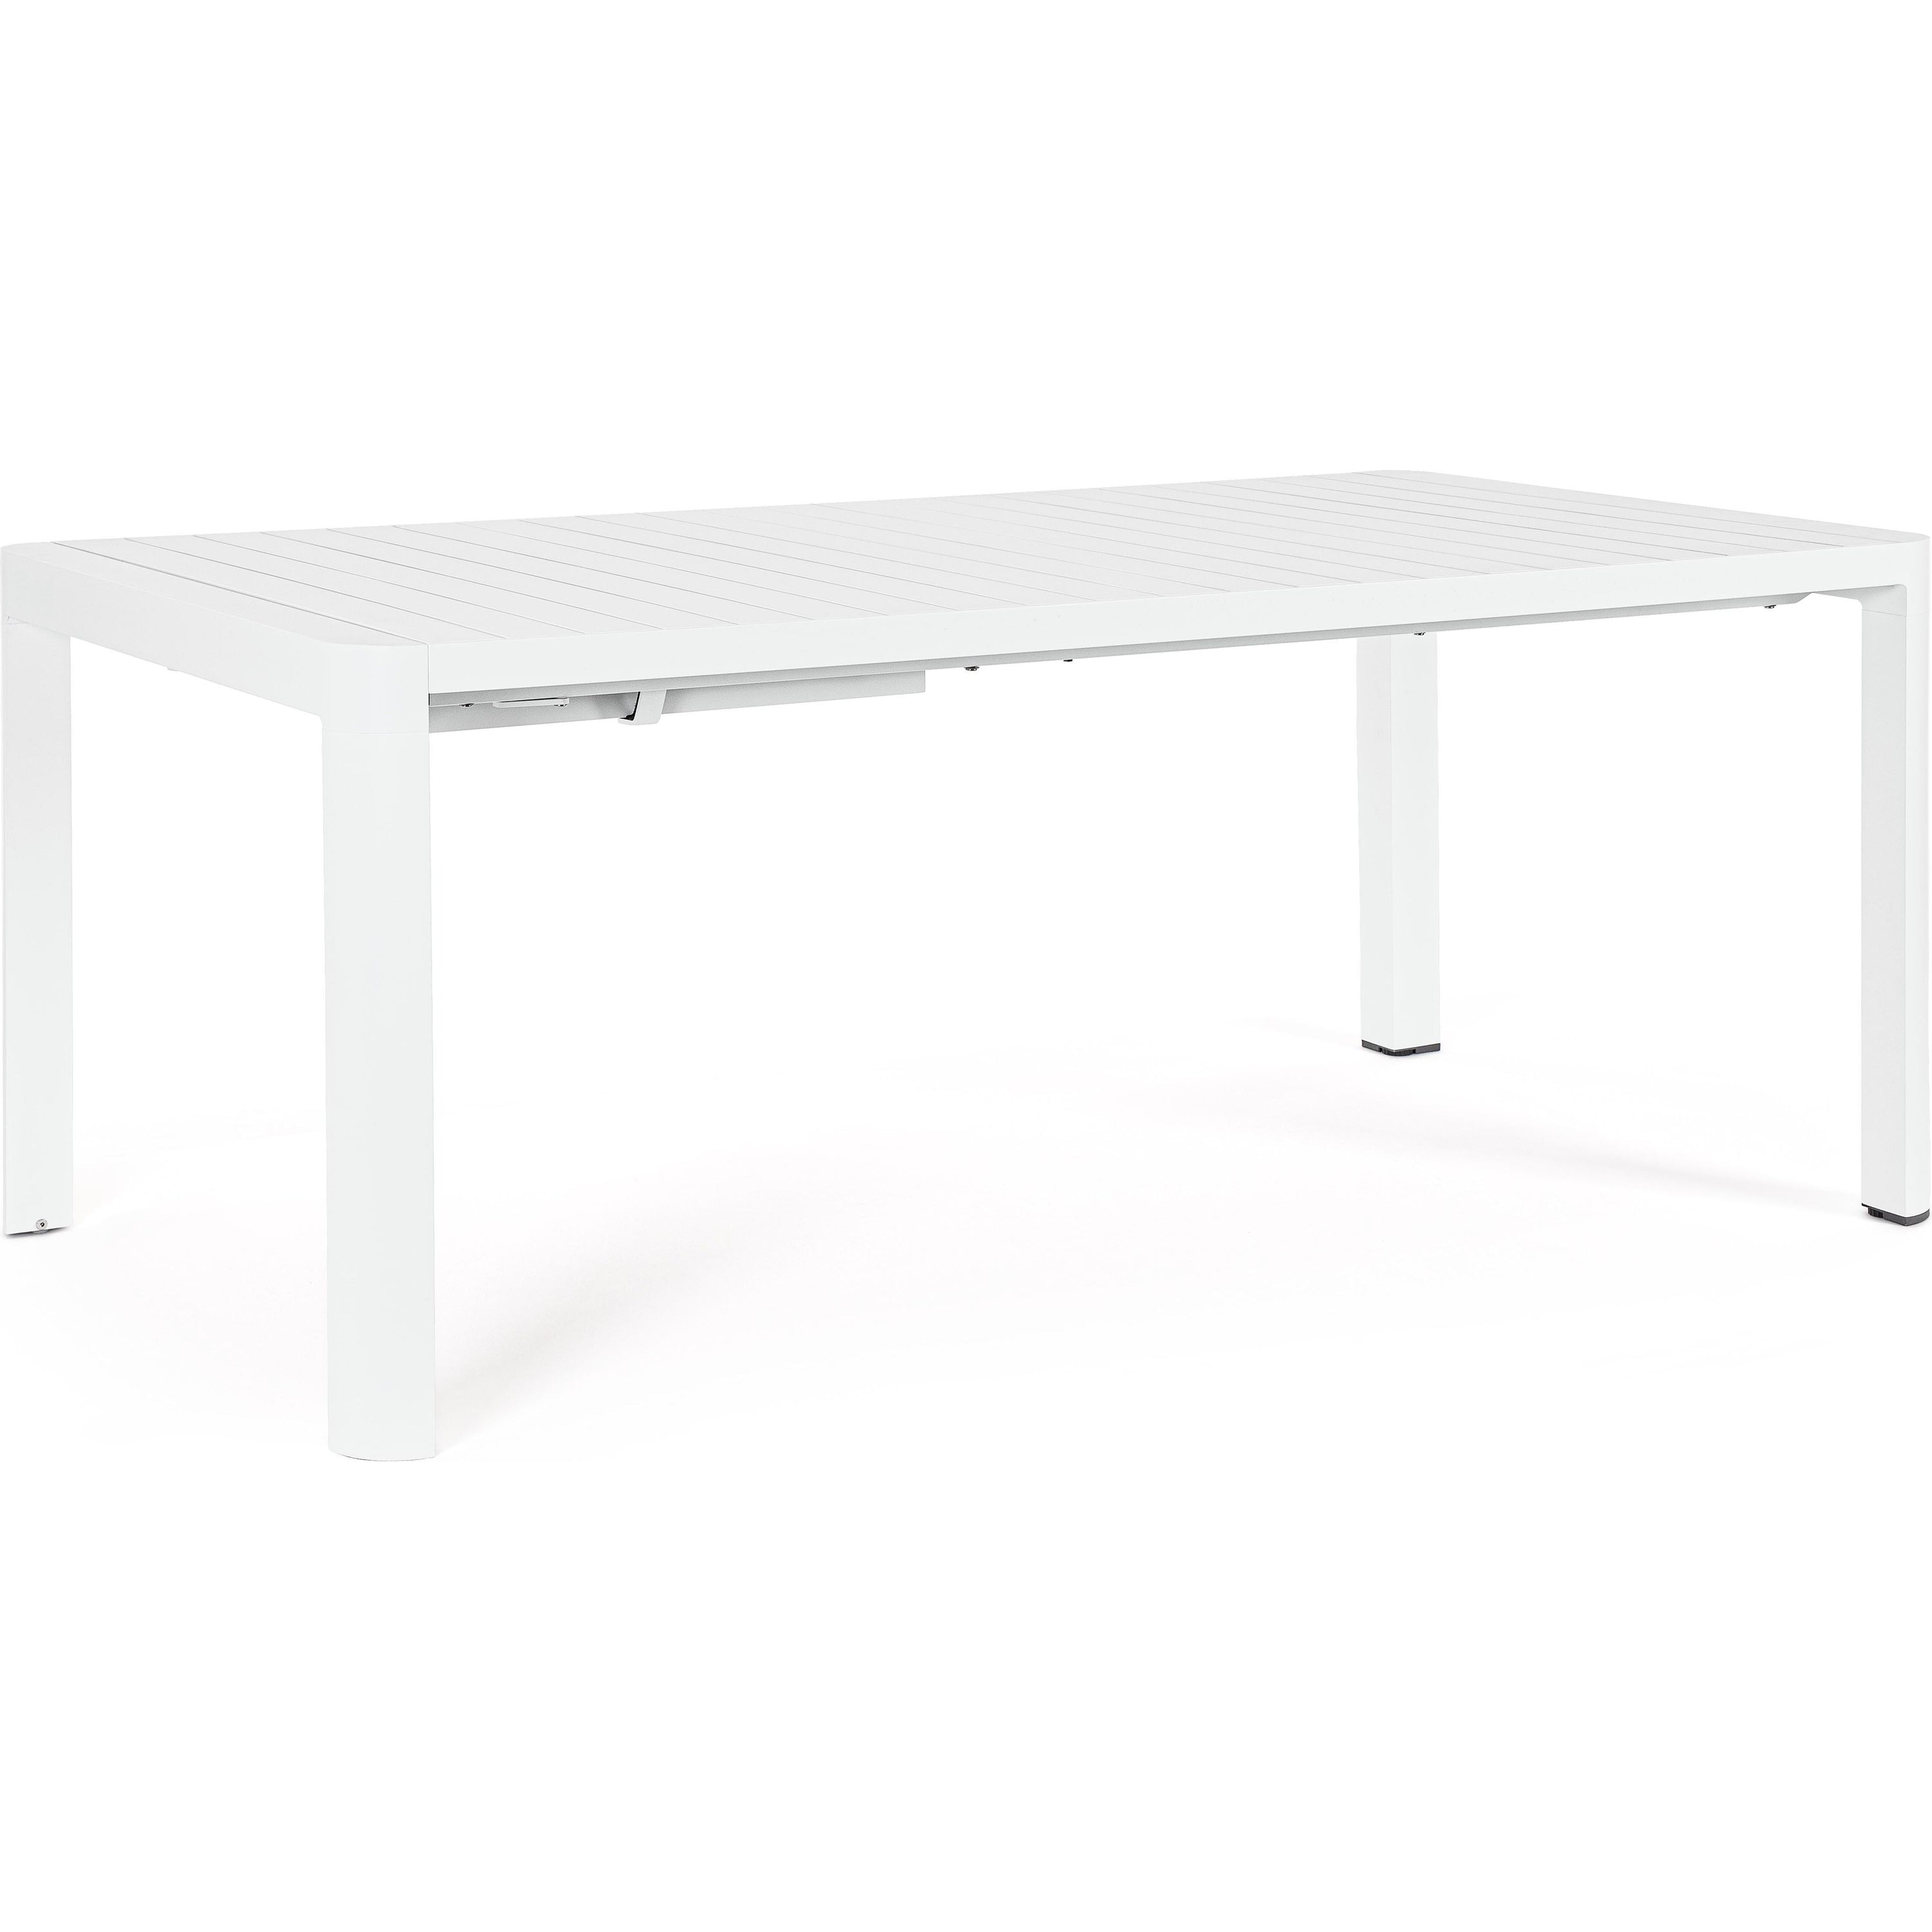 KIPLIN prasiilginantis lauko valgomojo stalas, 180-240x100cm, baltas